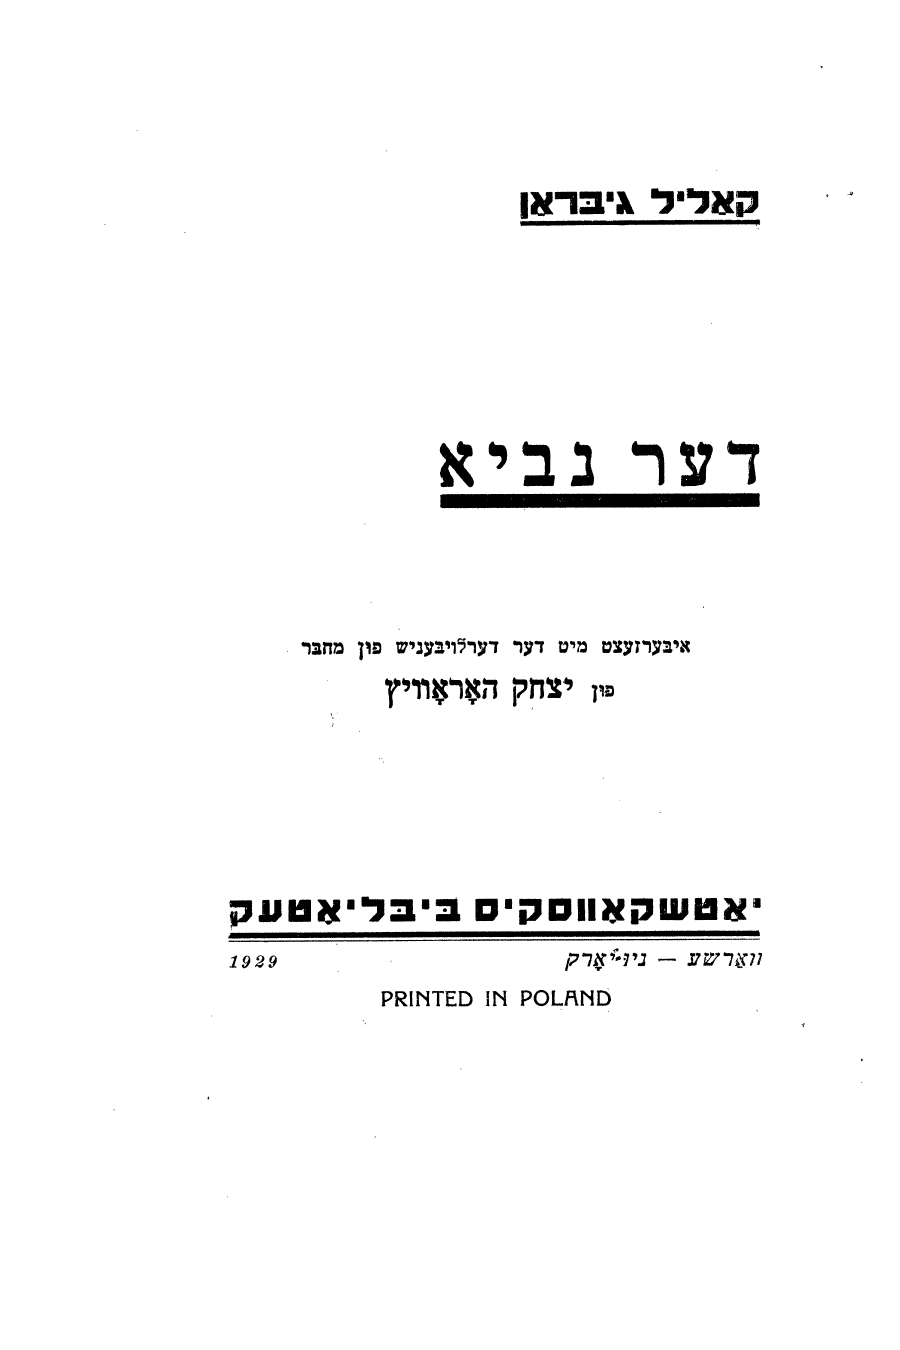 Der Novi (The Prophet), translated into Yiddish by Isaac Horowitz, Warsaw (Poland): Yatshkovski’s Biblyotek, 1929.